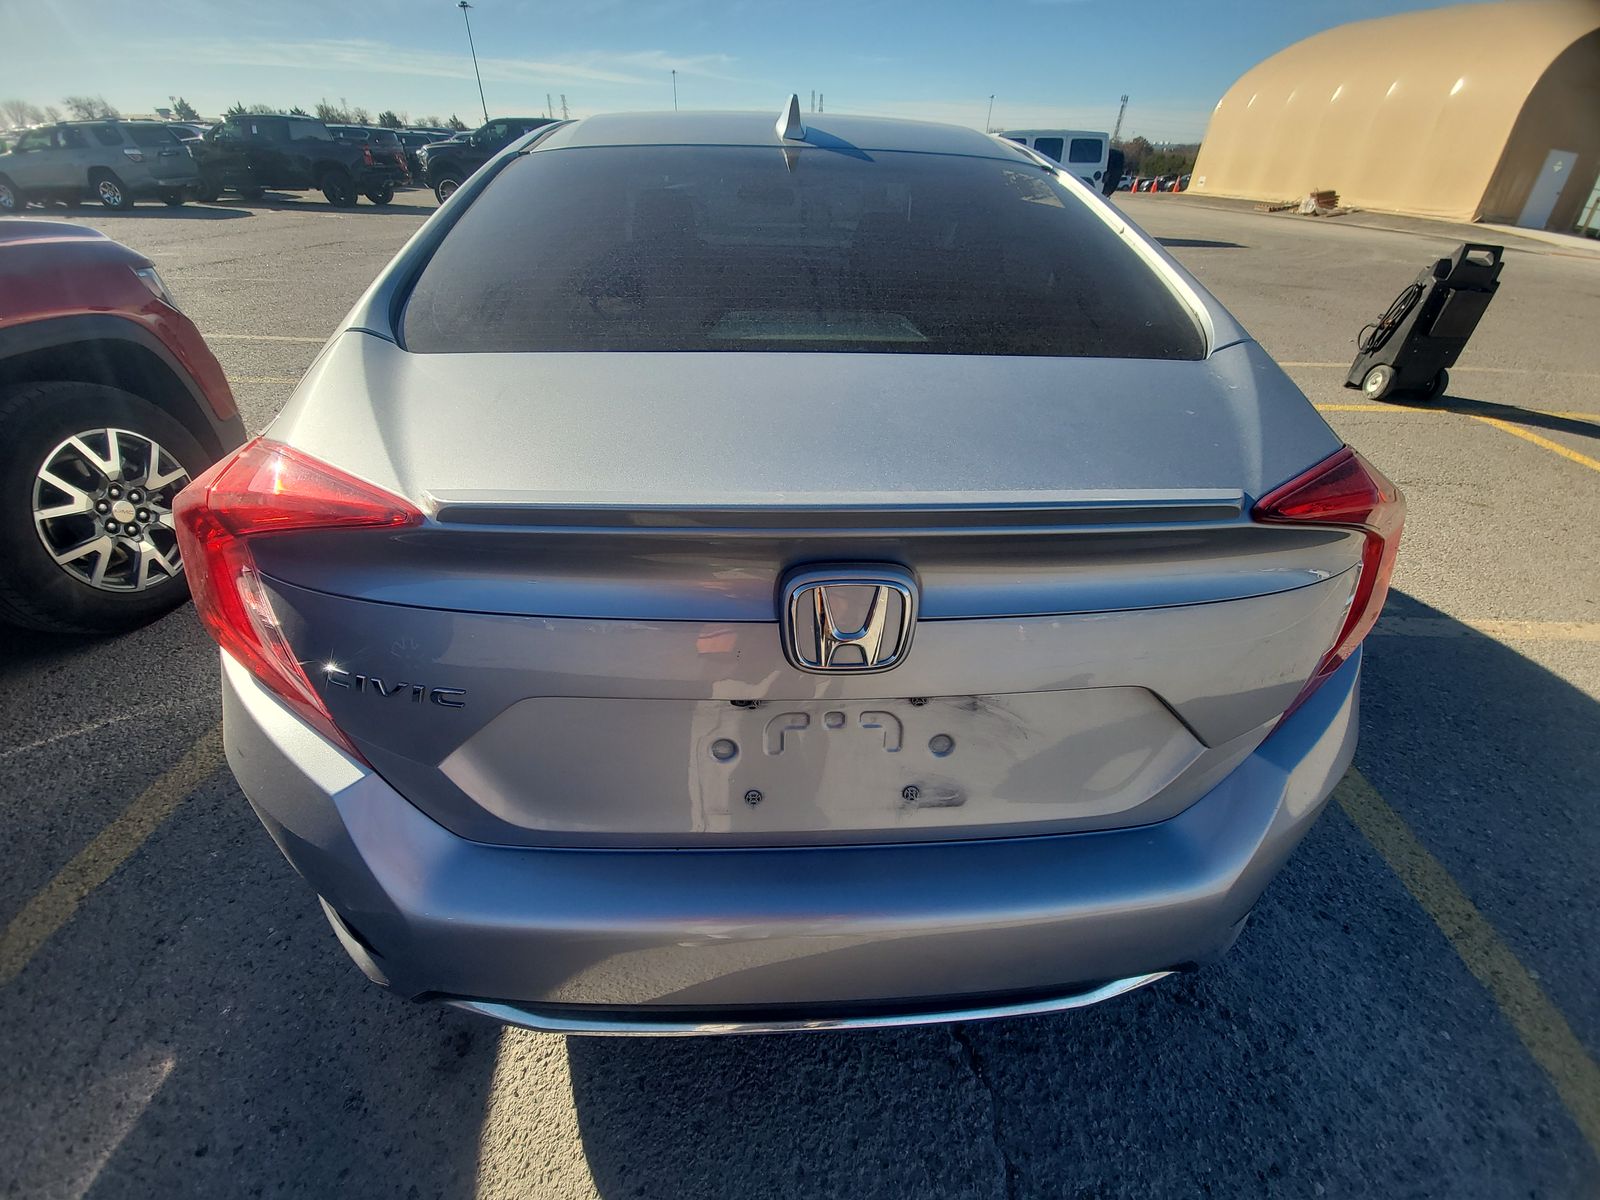 2019 Honda Civic EX FWD